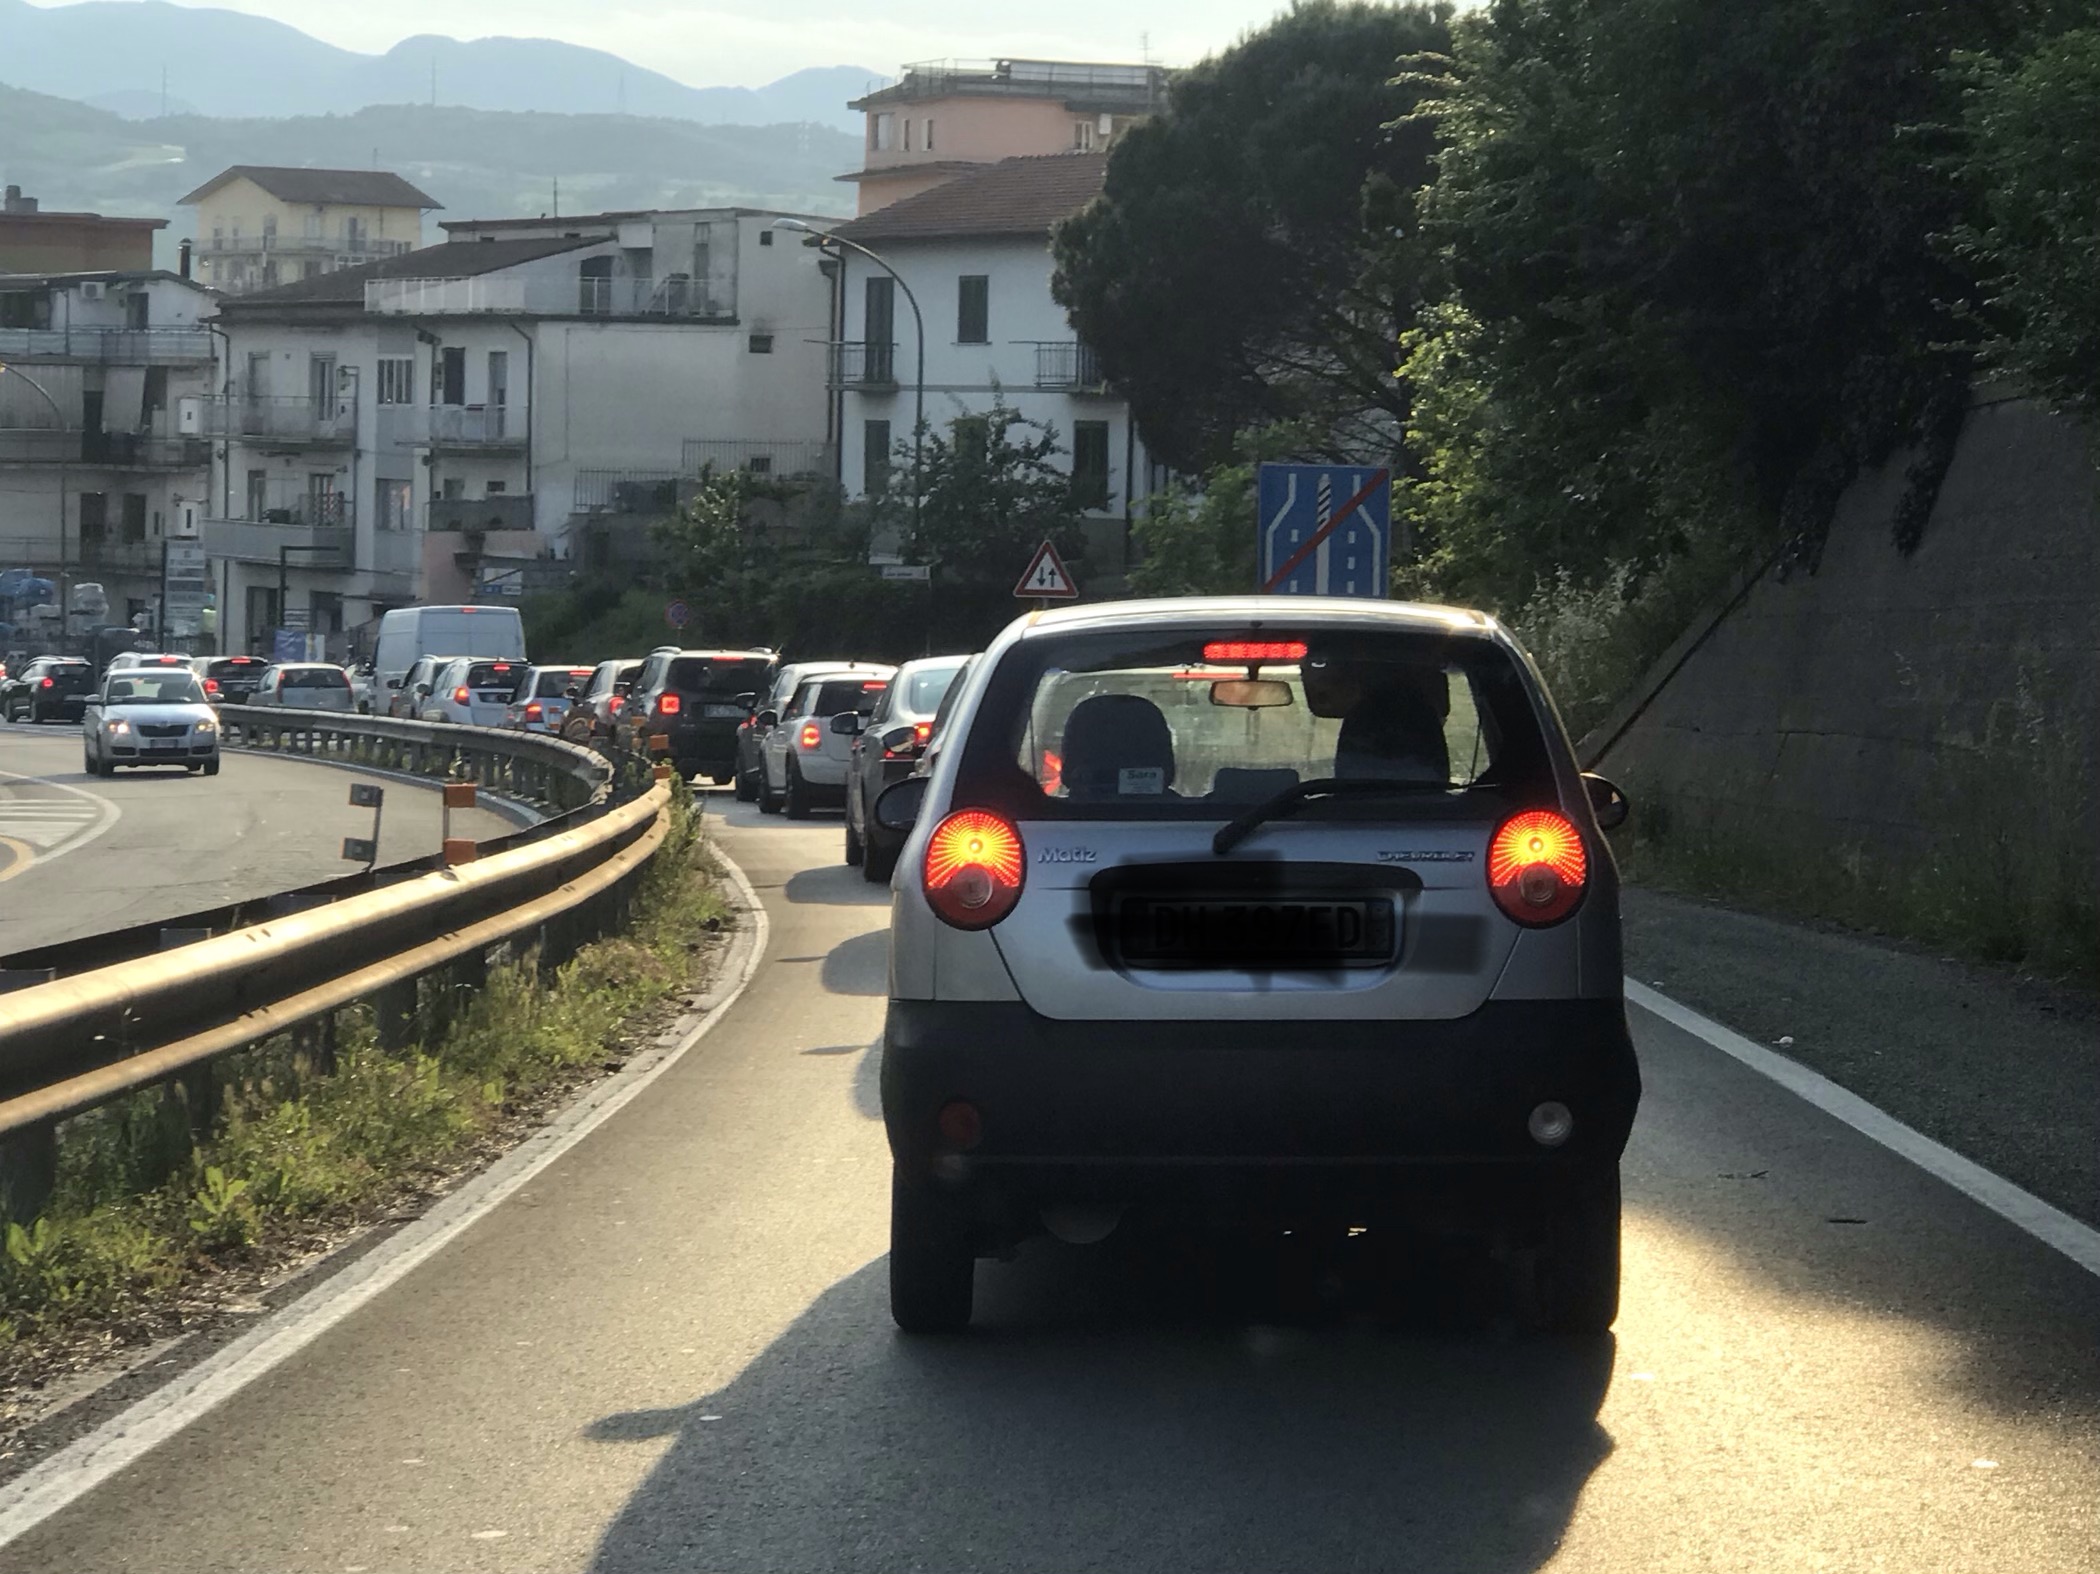 Benevento| Traffico in C.da San Vito, prima decisione: traffico canalizzato